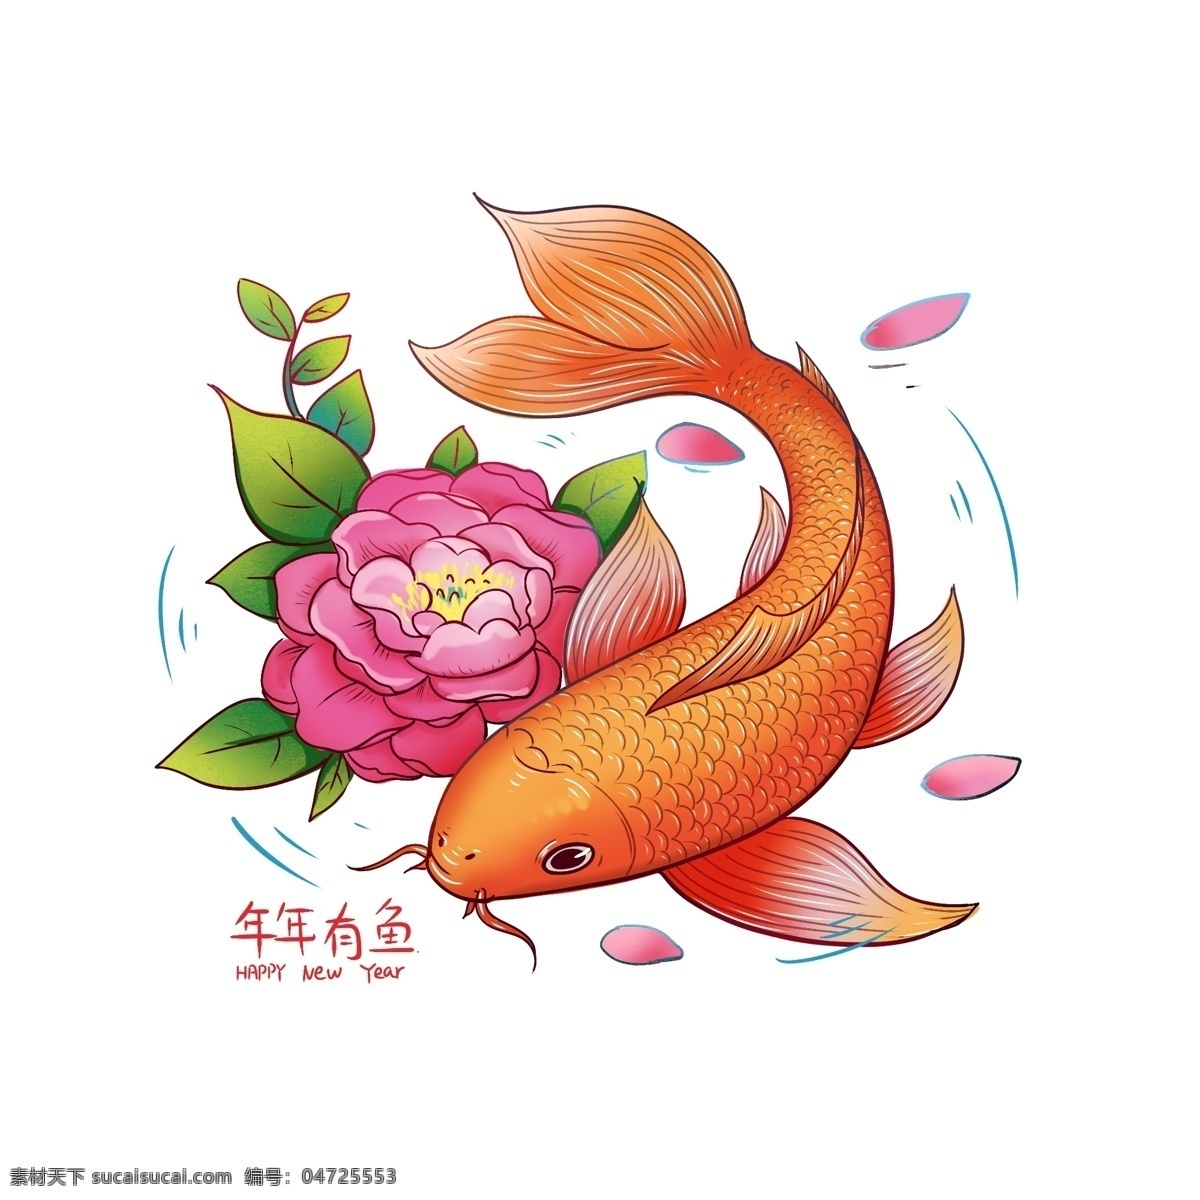 2019 手绘 春节 锦鲤 插图 年年有鱼 新春 转发这条锦鲤